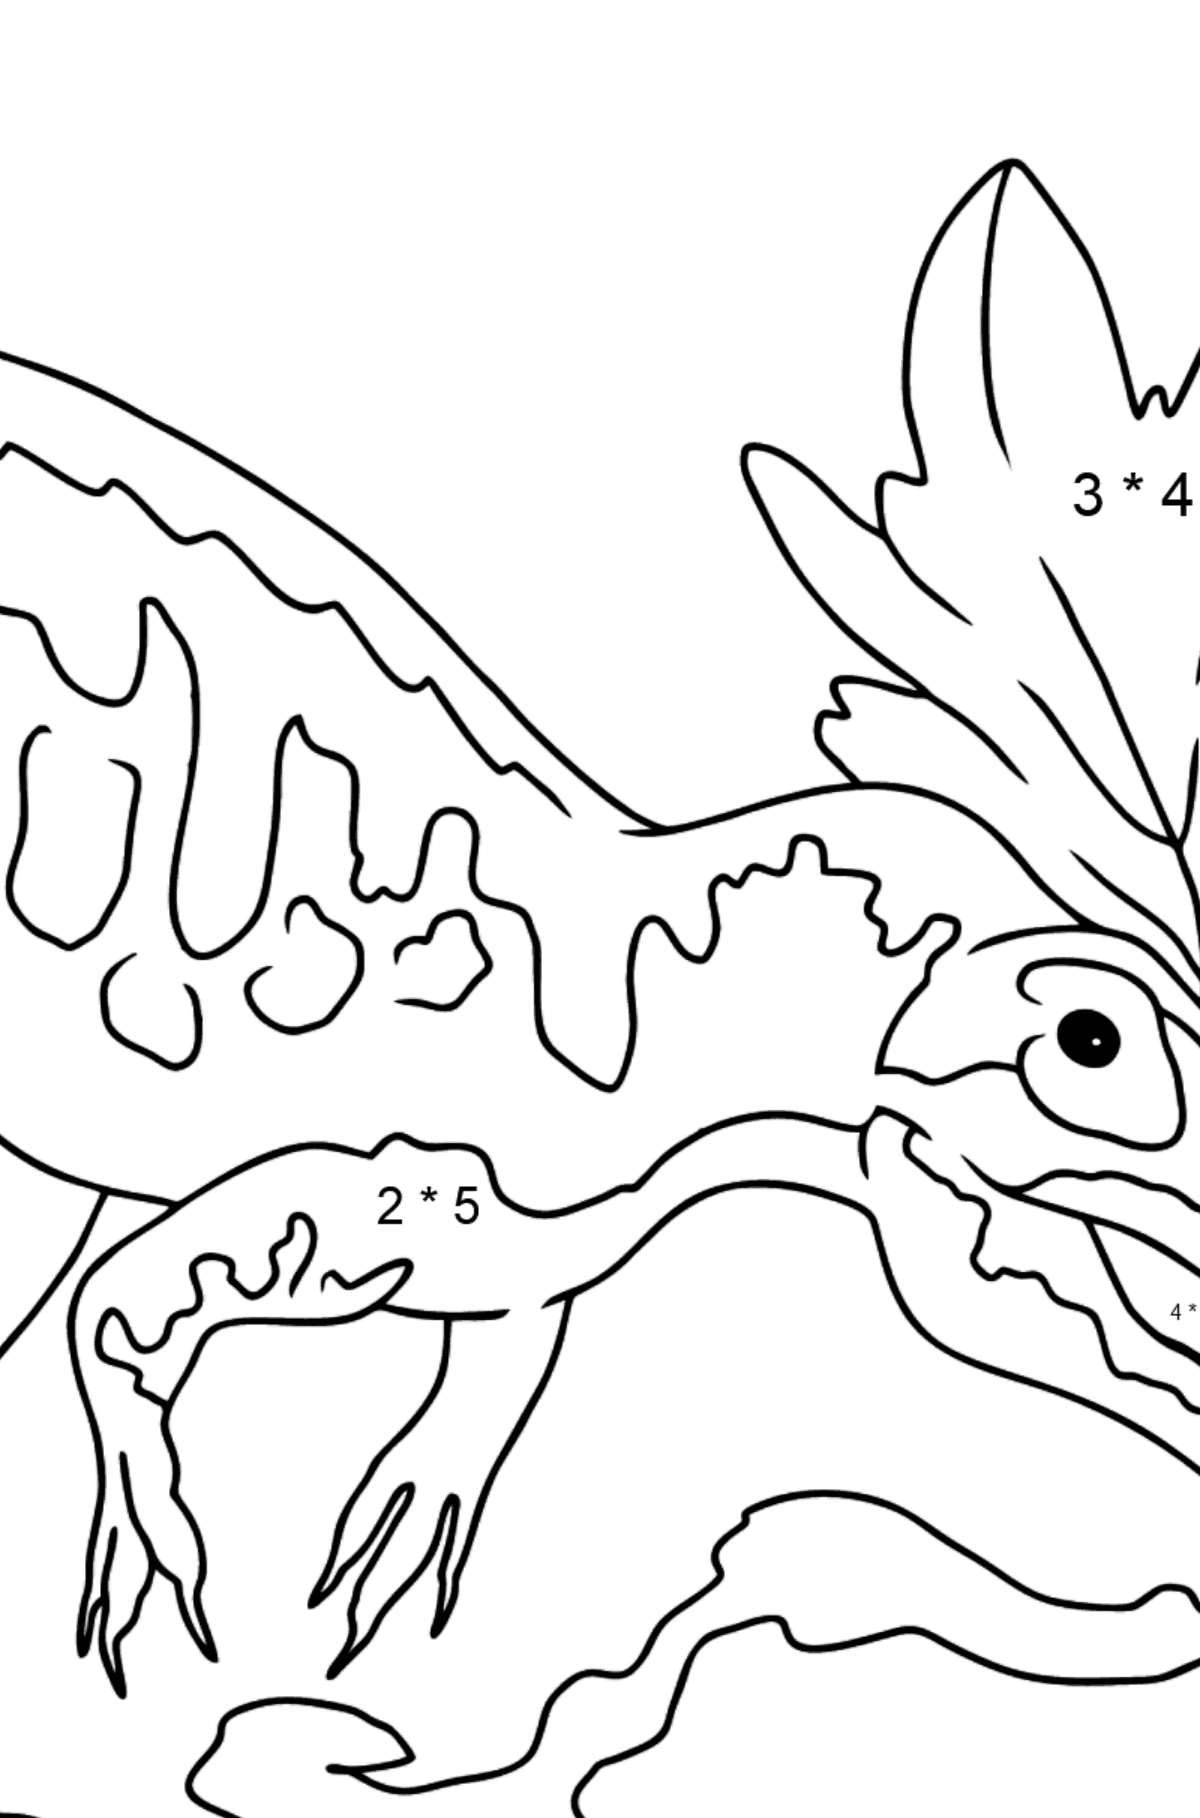 Desenho para colorir Allosaurus (fácil) - Colorindo com Matemática - Multiplicação para Crianças